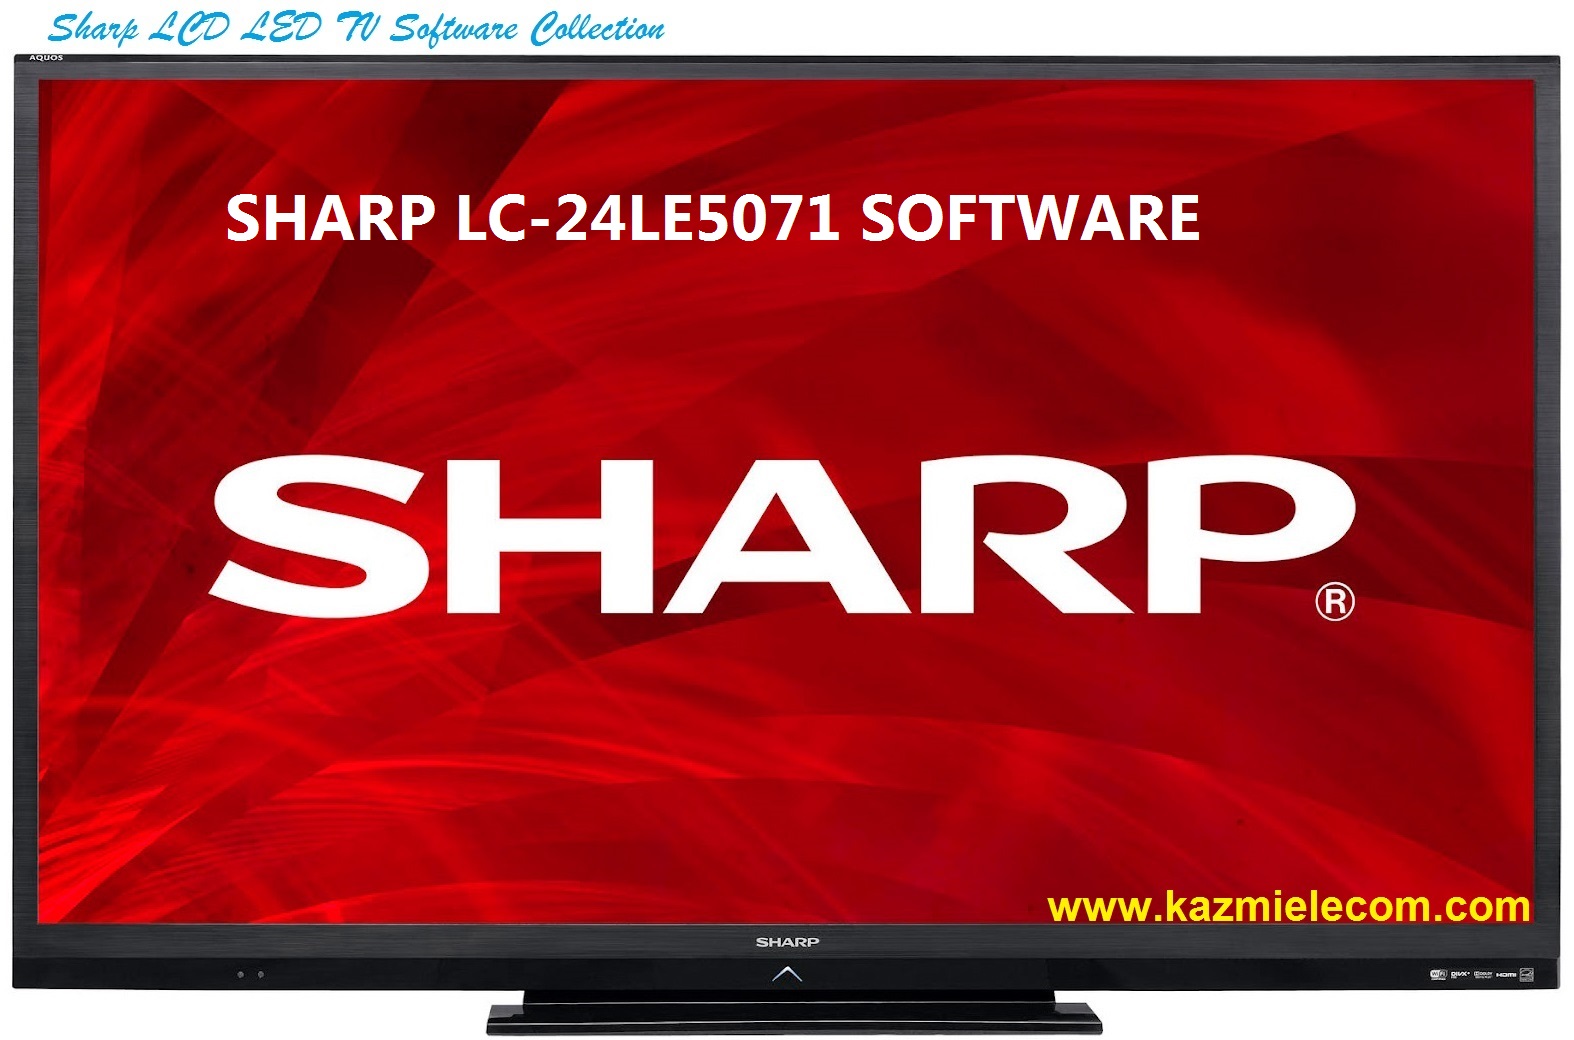 Sharp Lc-24Le5071